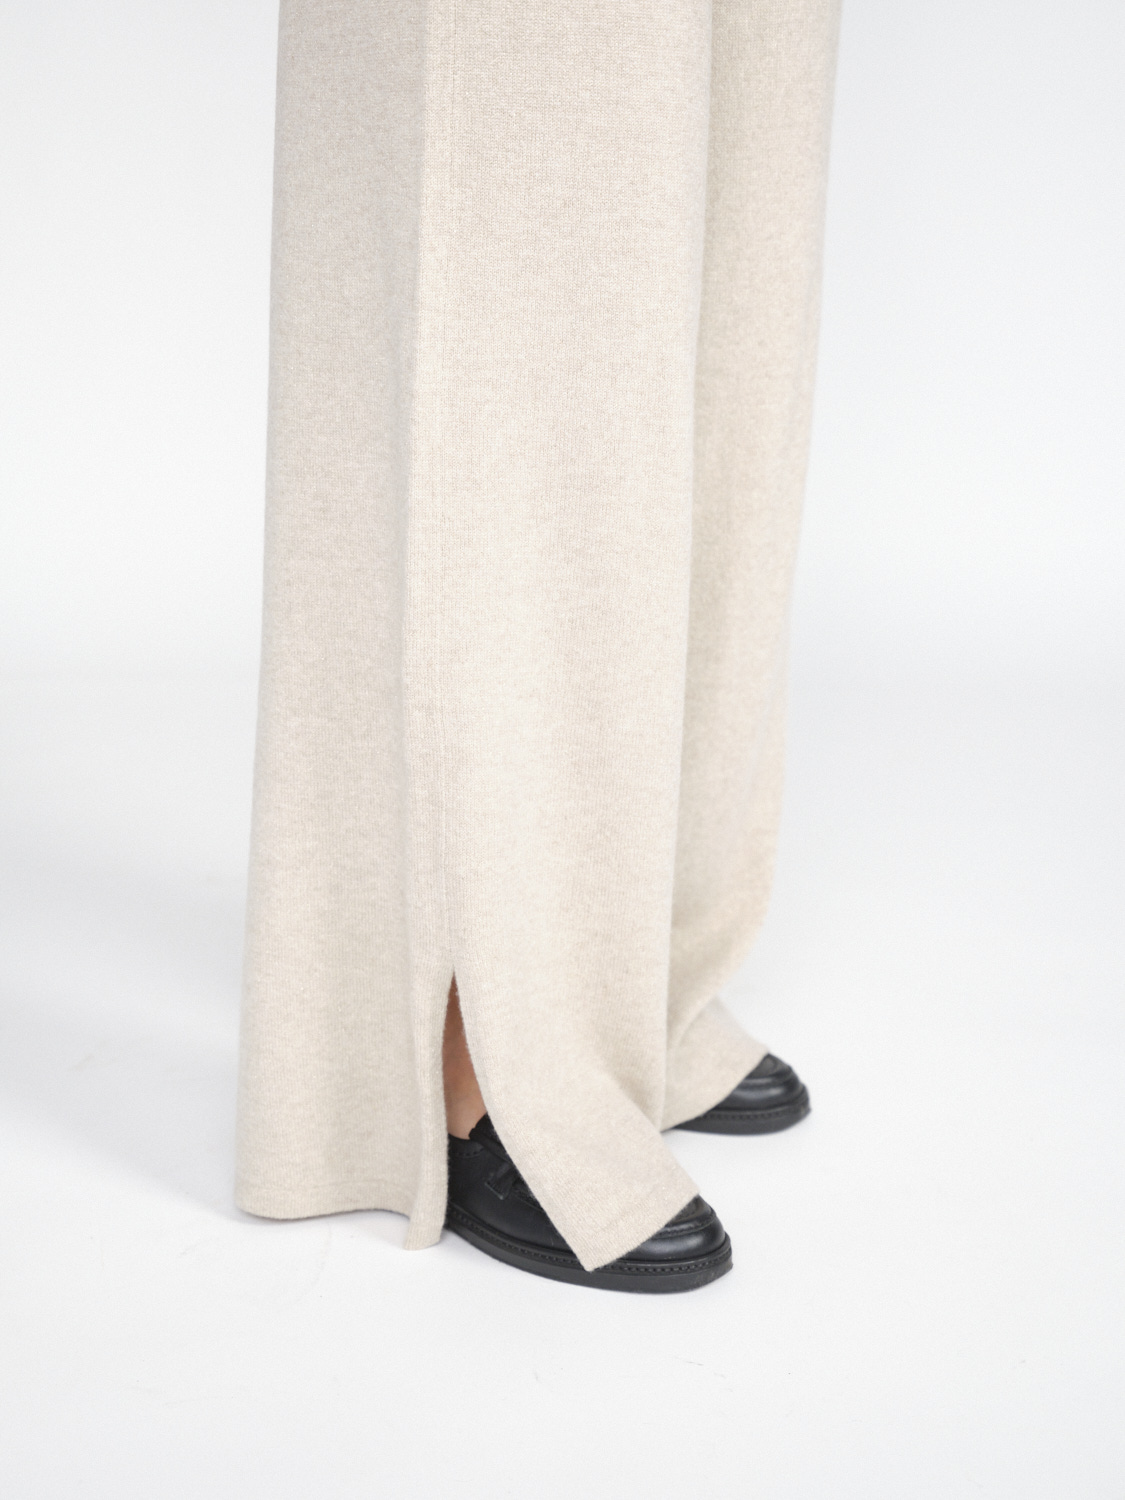 Lisa Yang Marlo - Pantaloni in cashmere con effetti glitterati   beige XS/S